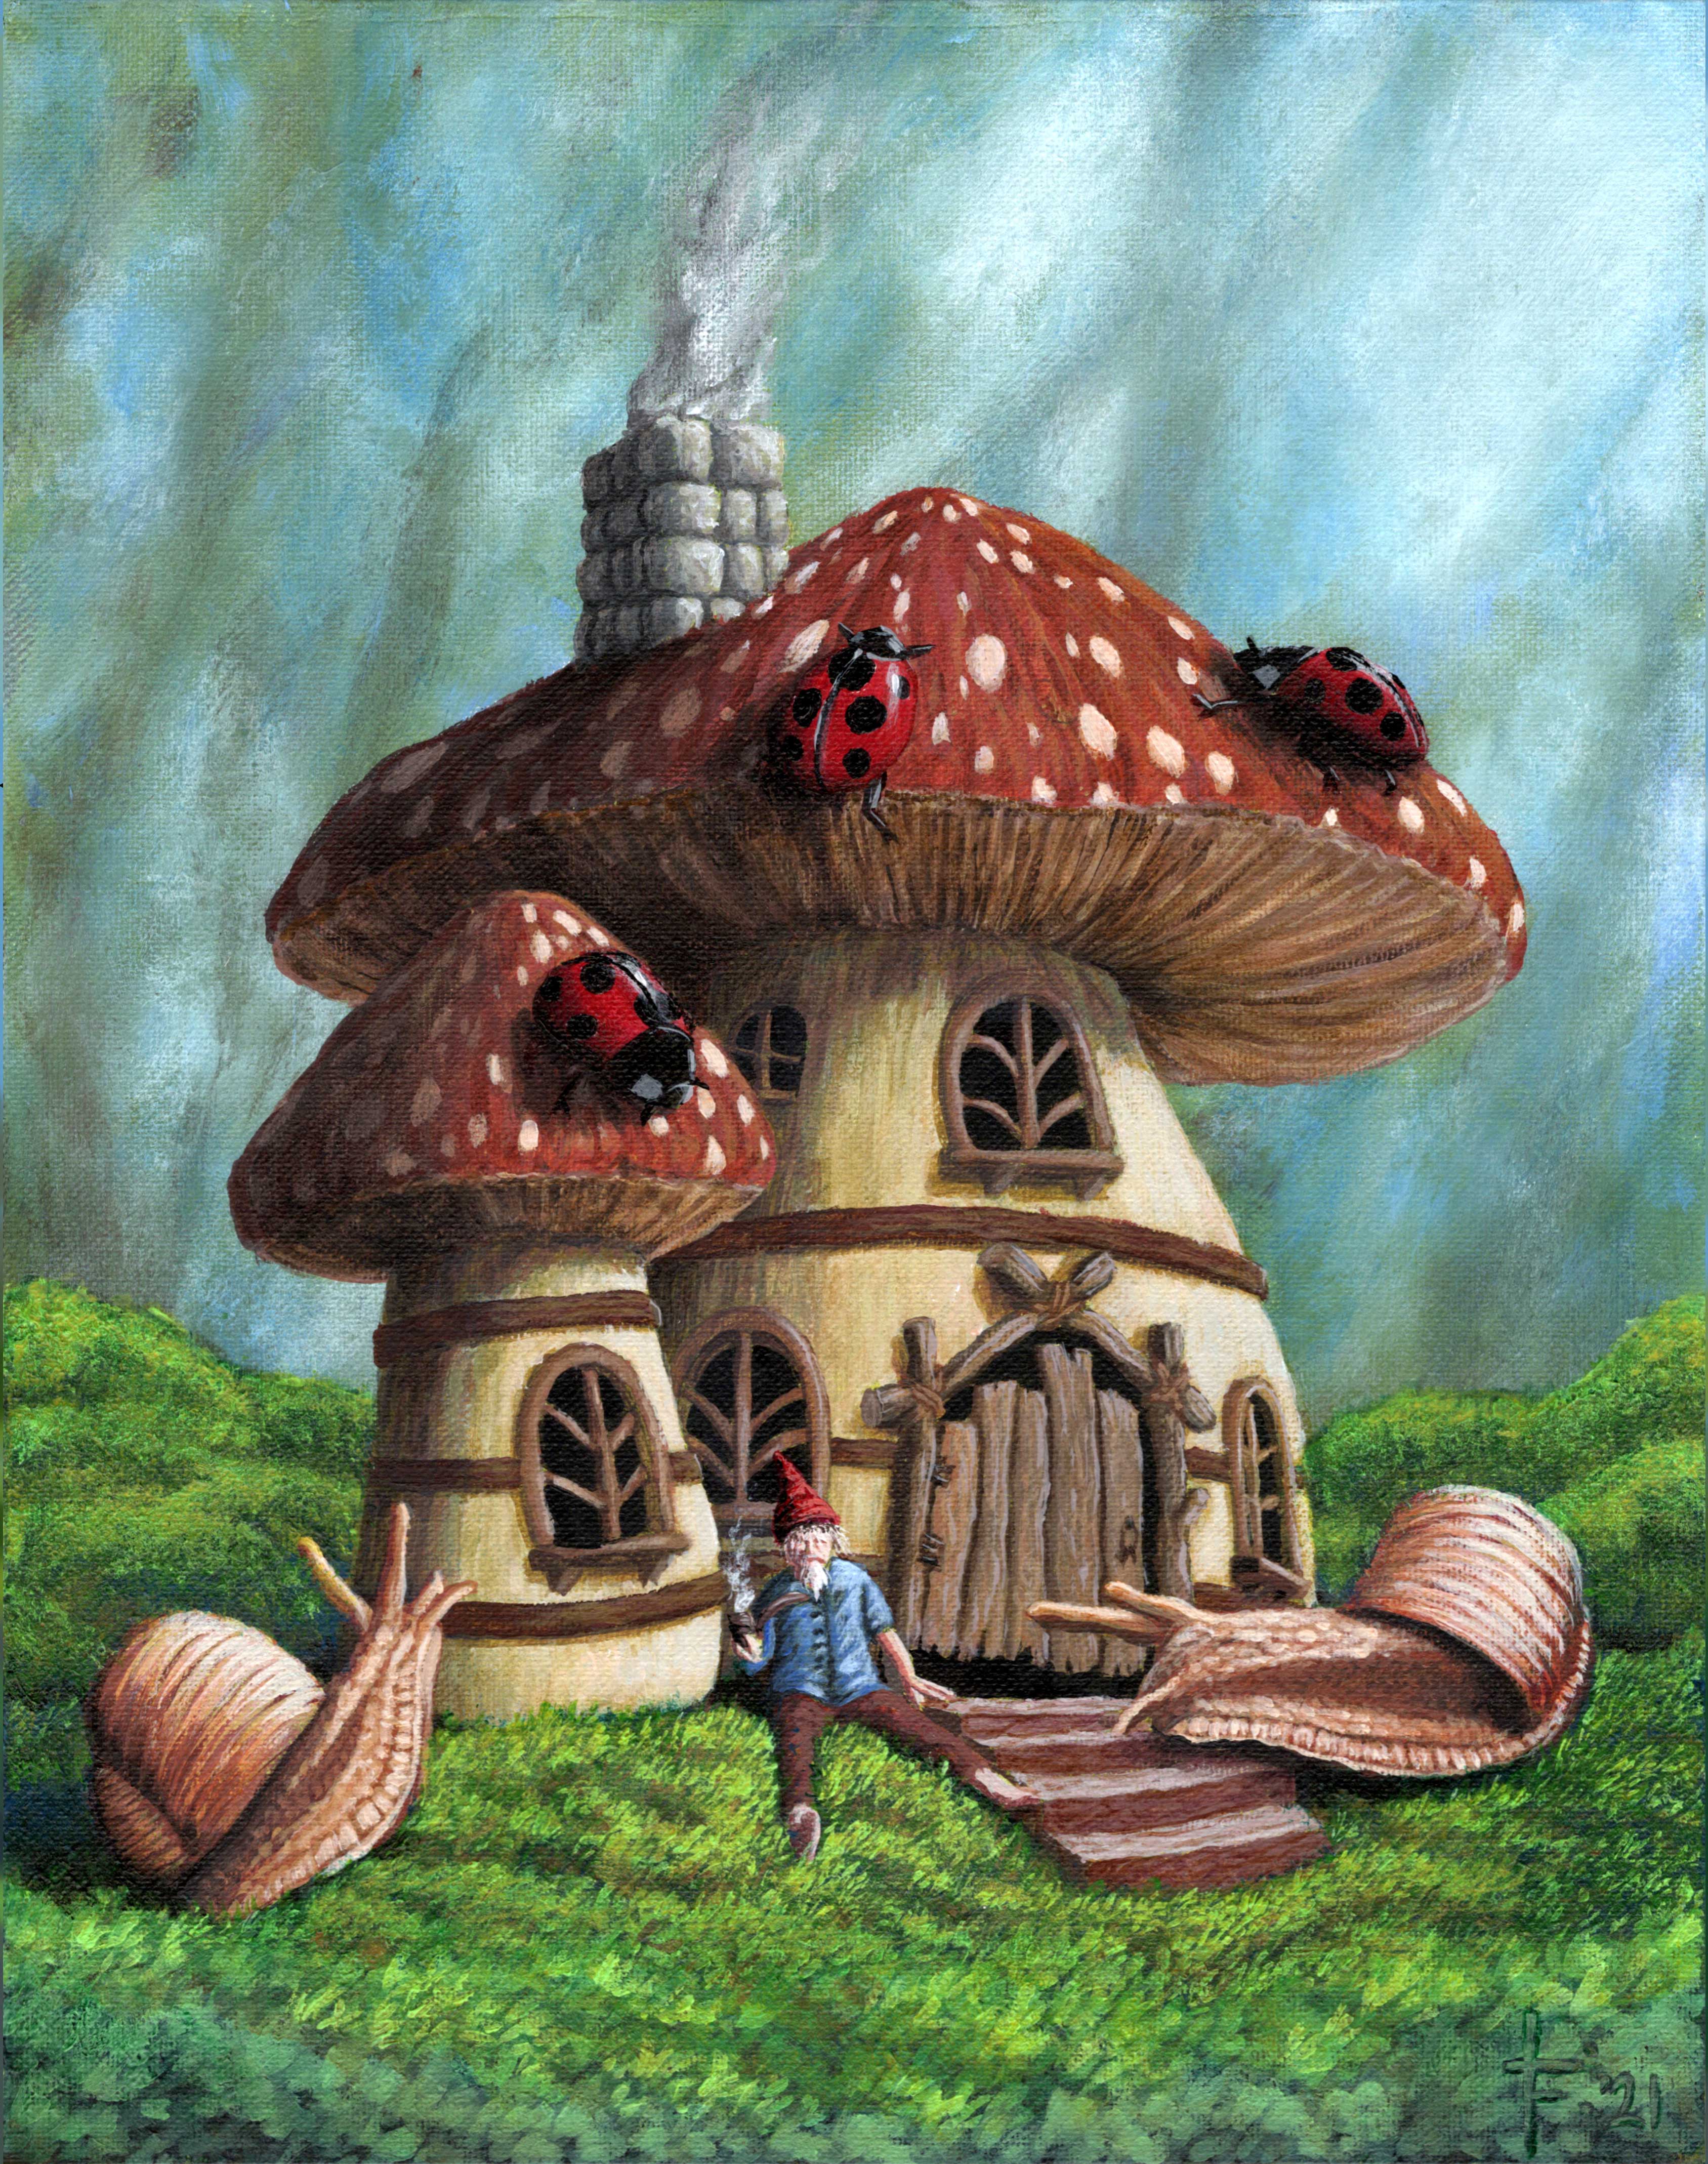 Artwork: Gnome Home